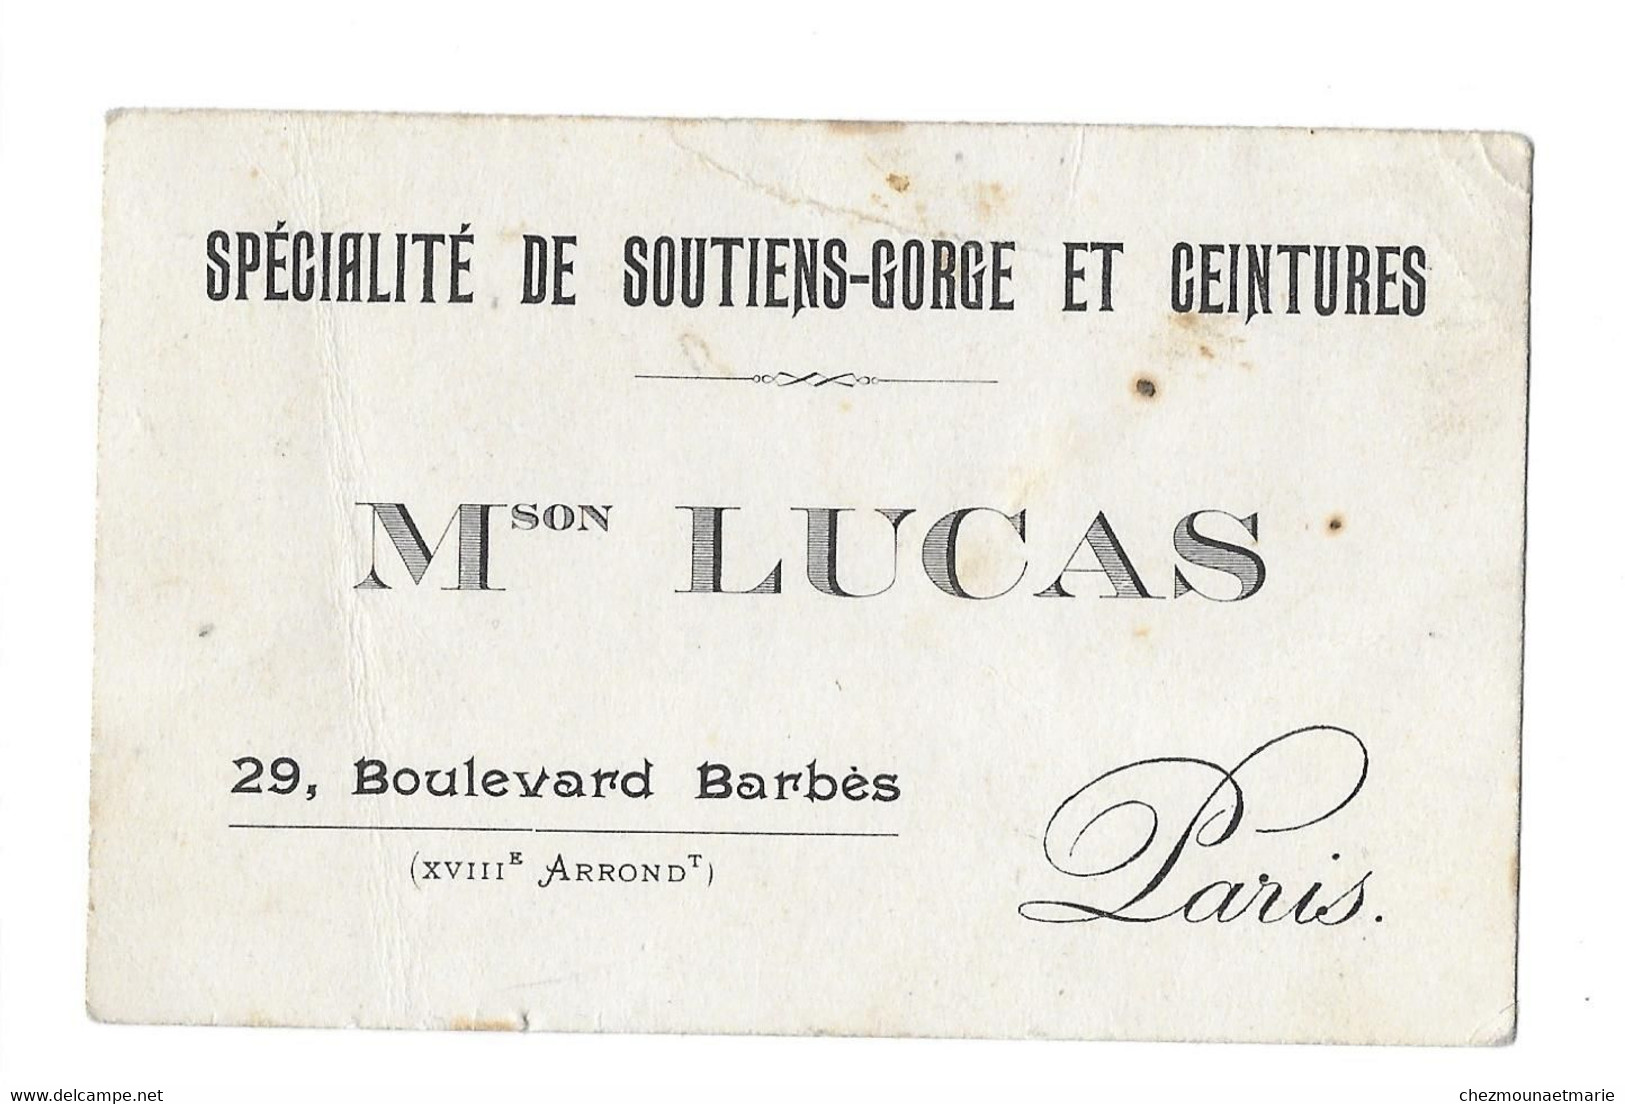 PARIS 29 BLVD BARBES - MAISON LUCAS SPECIALITE DE SOUTIENS GORGE ET CEINTURES - CDV - Visiting Cards